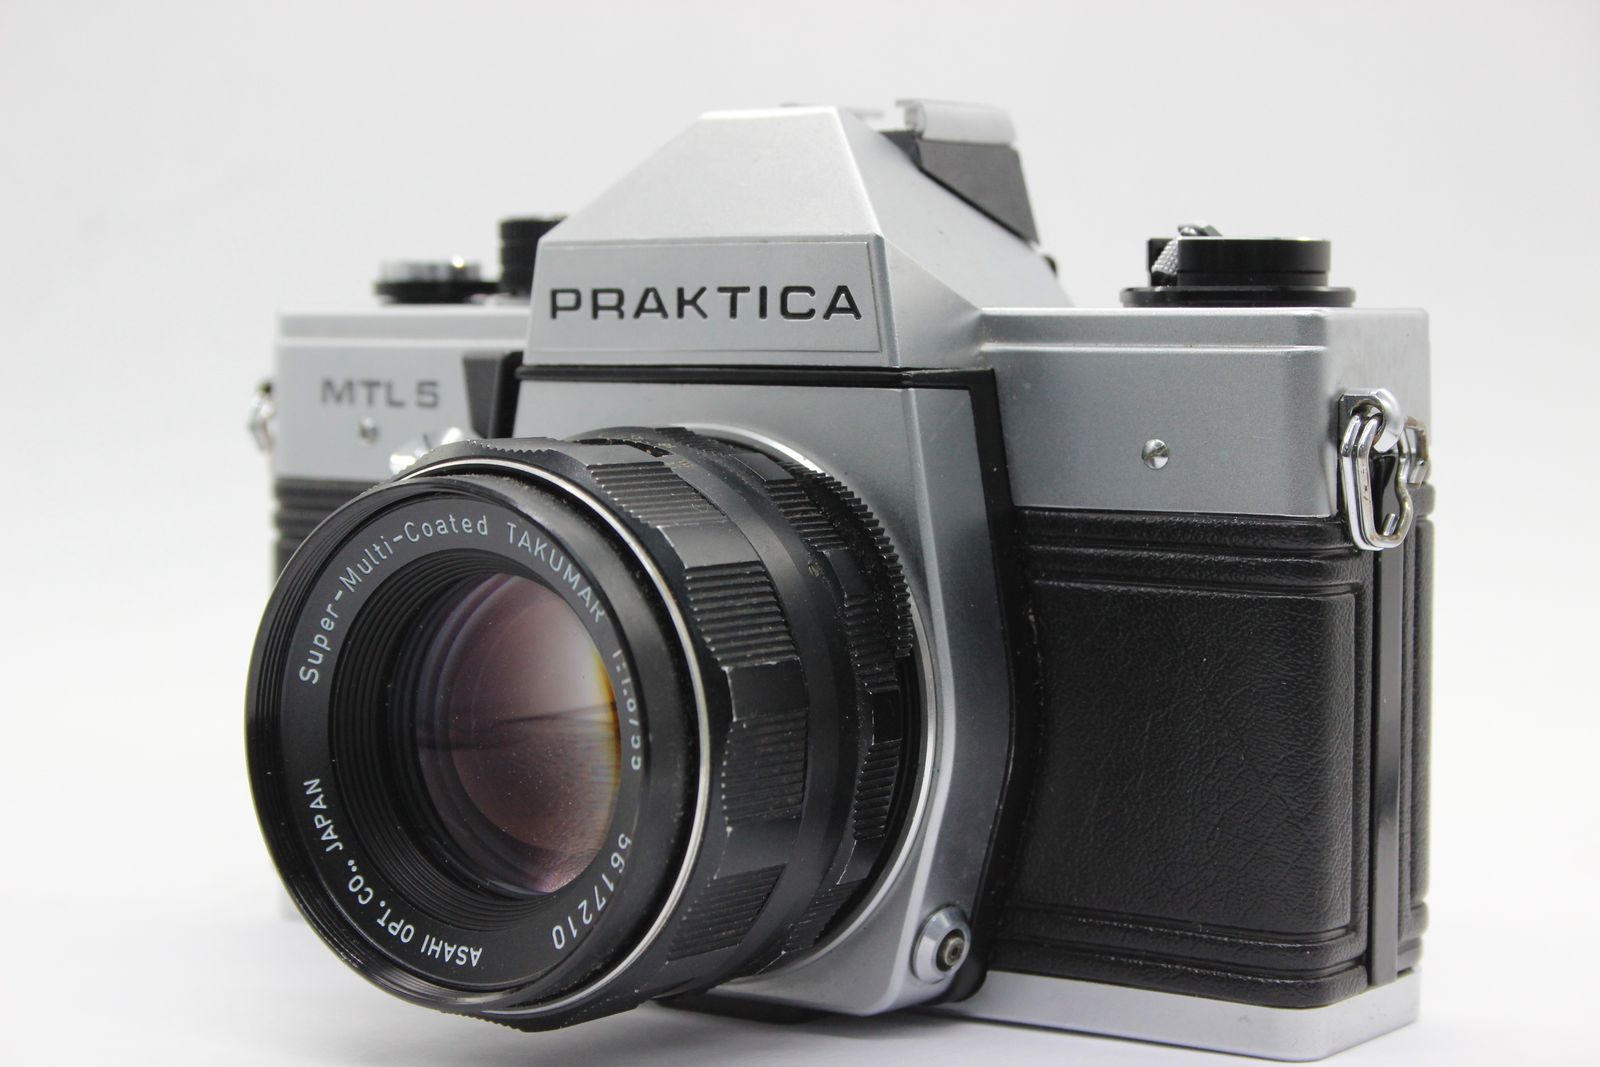 PRAKTICA MTL5 SMC Takumar 55mm f1.8 一眼レフ